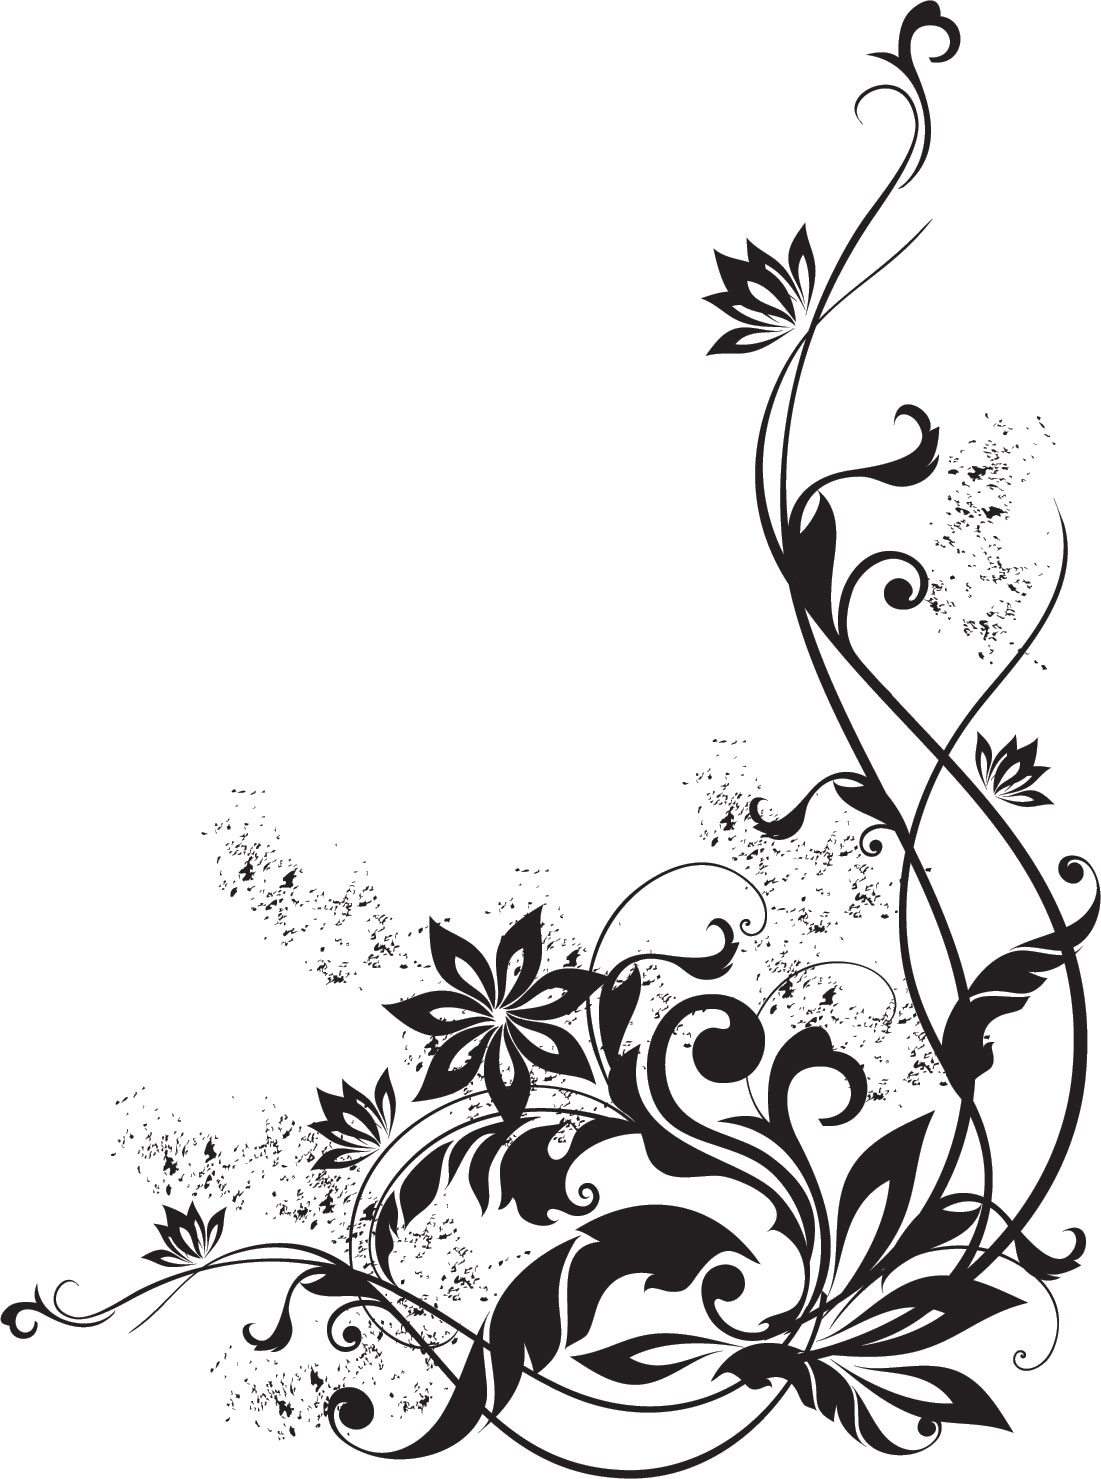 花のイラスト フリー素材 コーナーライン 角 No 126 白黒 葉 インク